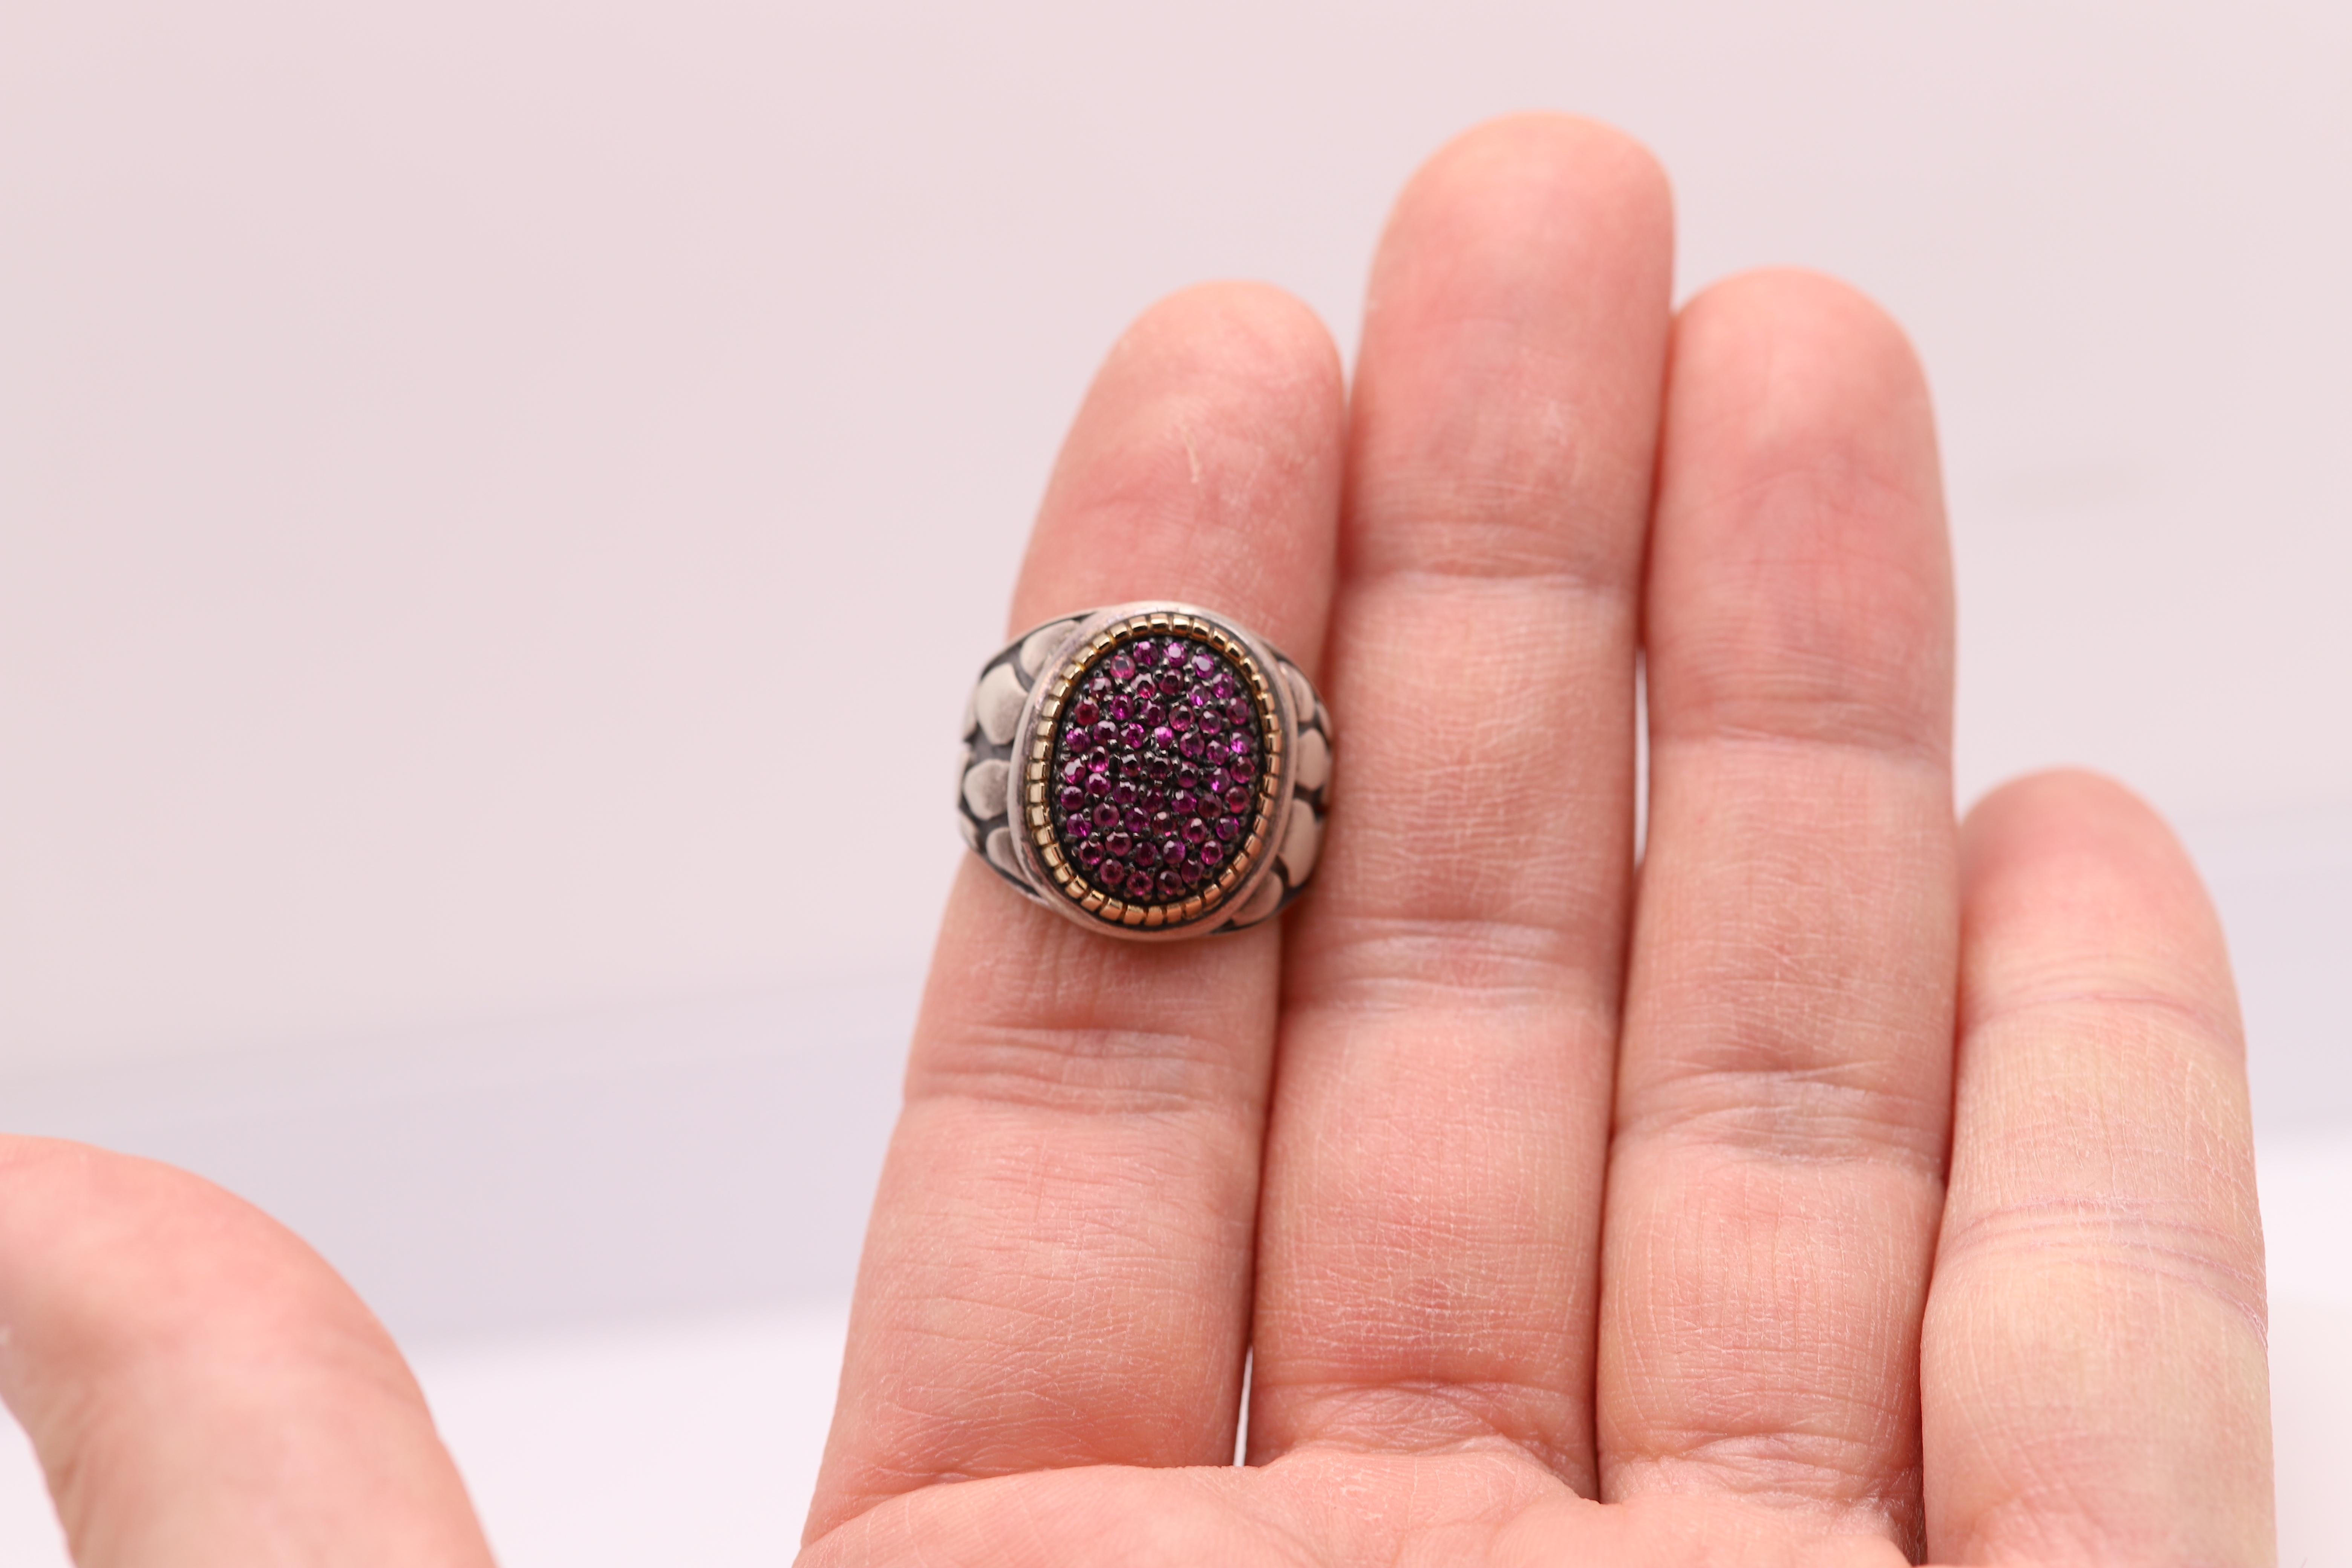 Vintage Brilliant Ring mit einem Cluster aus natürlichen Rubinsteinen
Ungefähre Größe der Rubinfläche 15 x 12 mm
Meistens Sterling Silber 925 und die Lünette ist massiv 18k Gelbgold.
Gute Handwerkskunst - hergestellt in Italien
Fingergröße 6,75